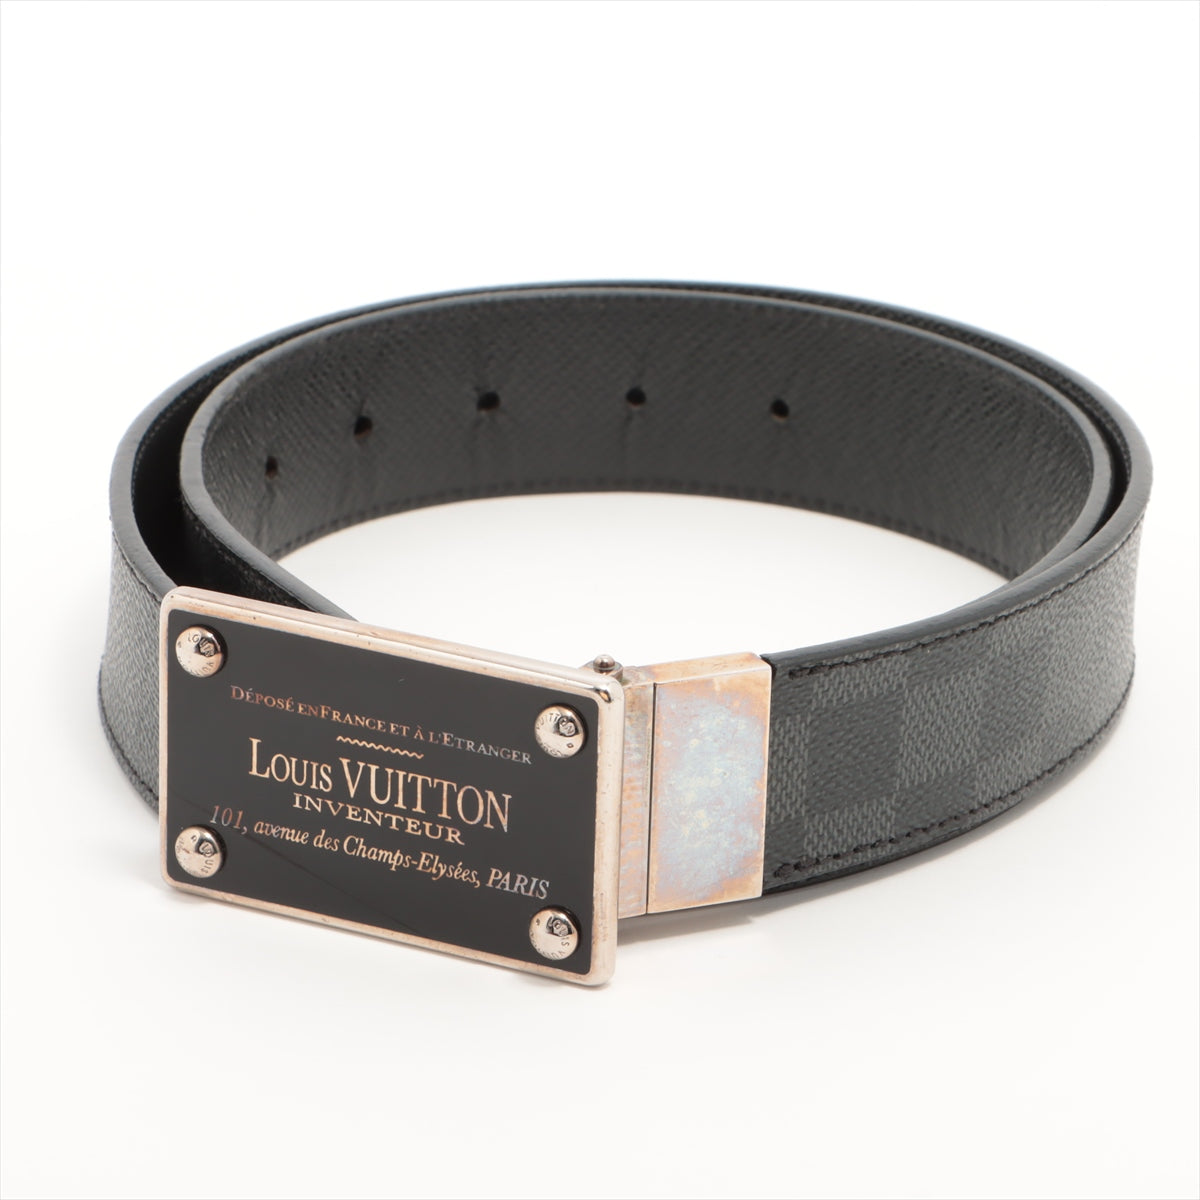 Louis Vuitton M9632 Sanctuary Aventour CA2130 Belt 85/34 PVC & leather